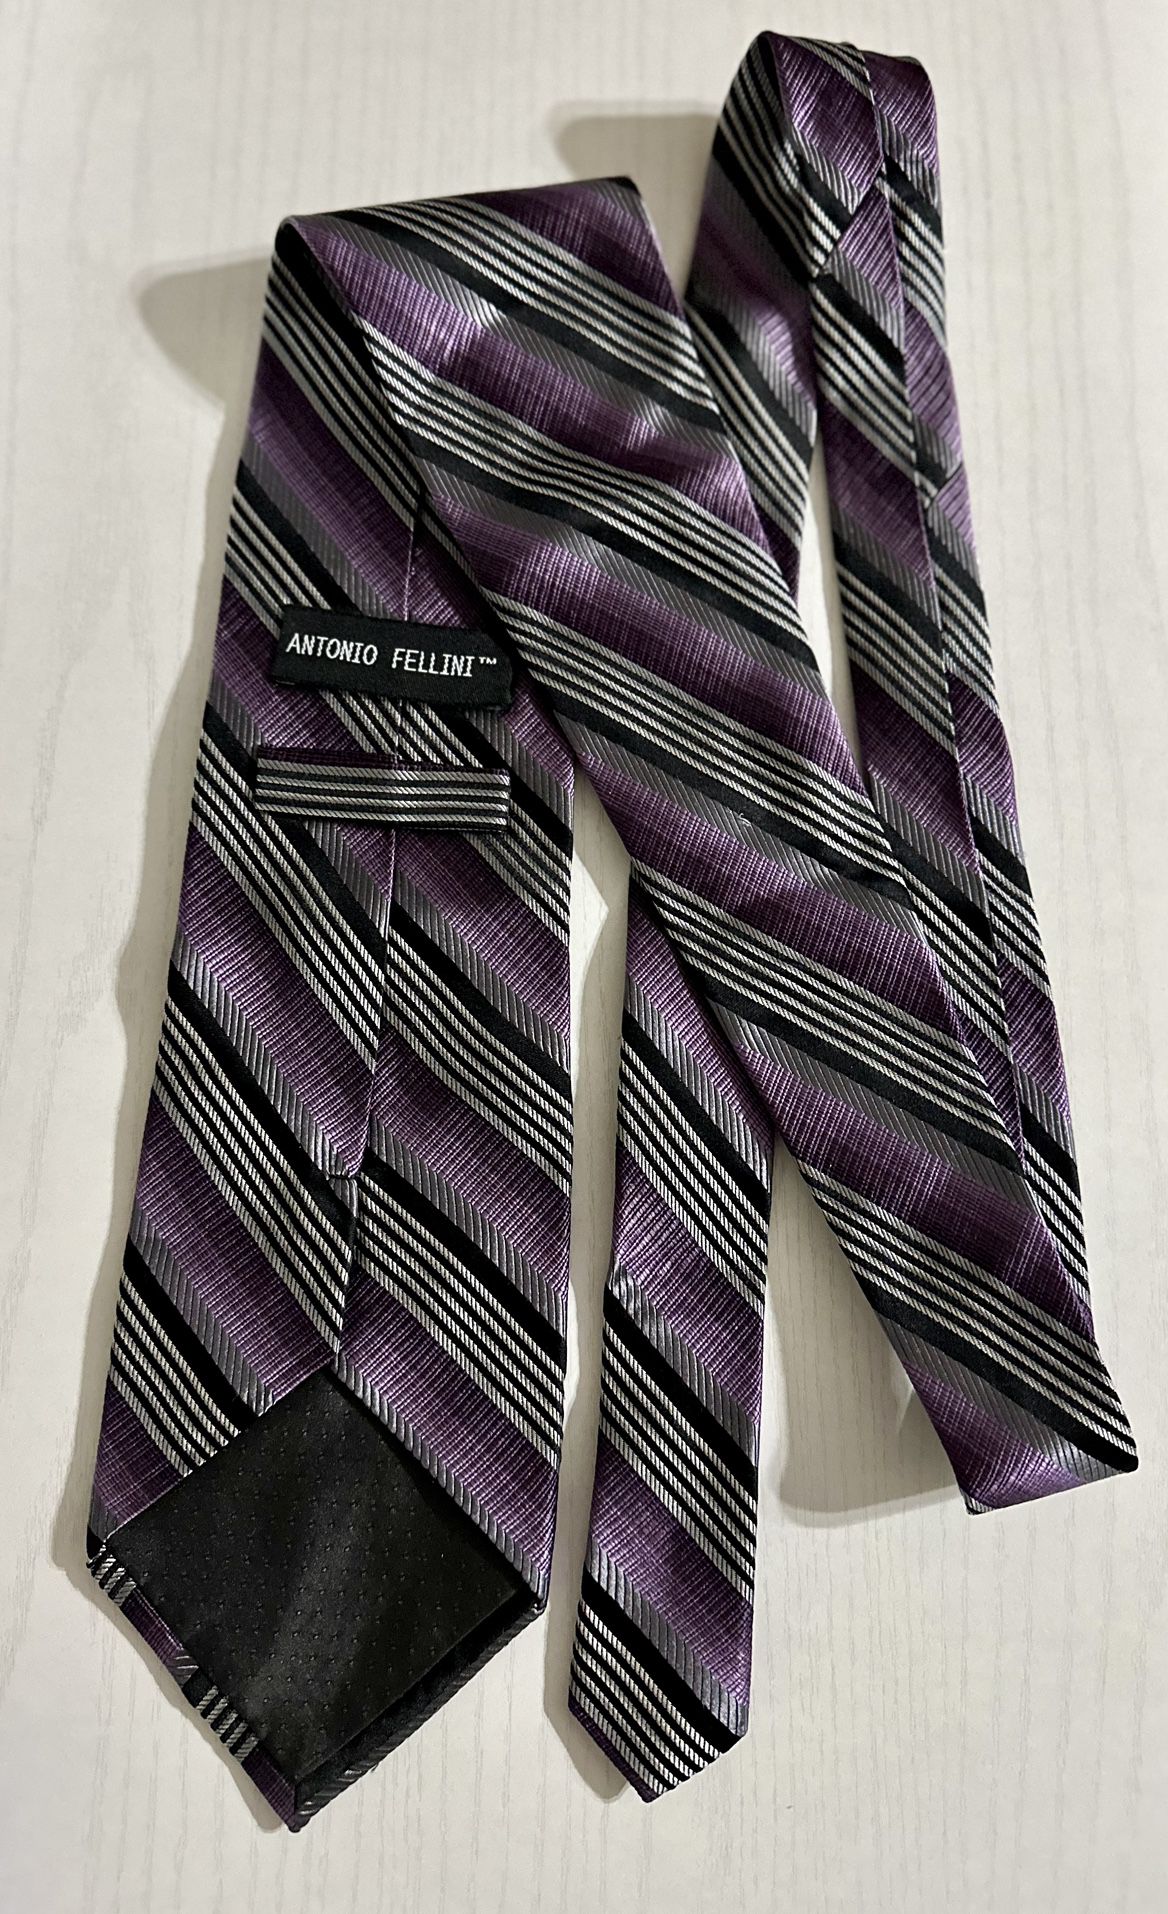 Antonio Fellini Silk Tie Purple Black Silver Neck Tie Men’s Stripes 100% Silk